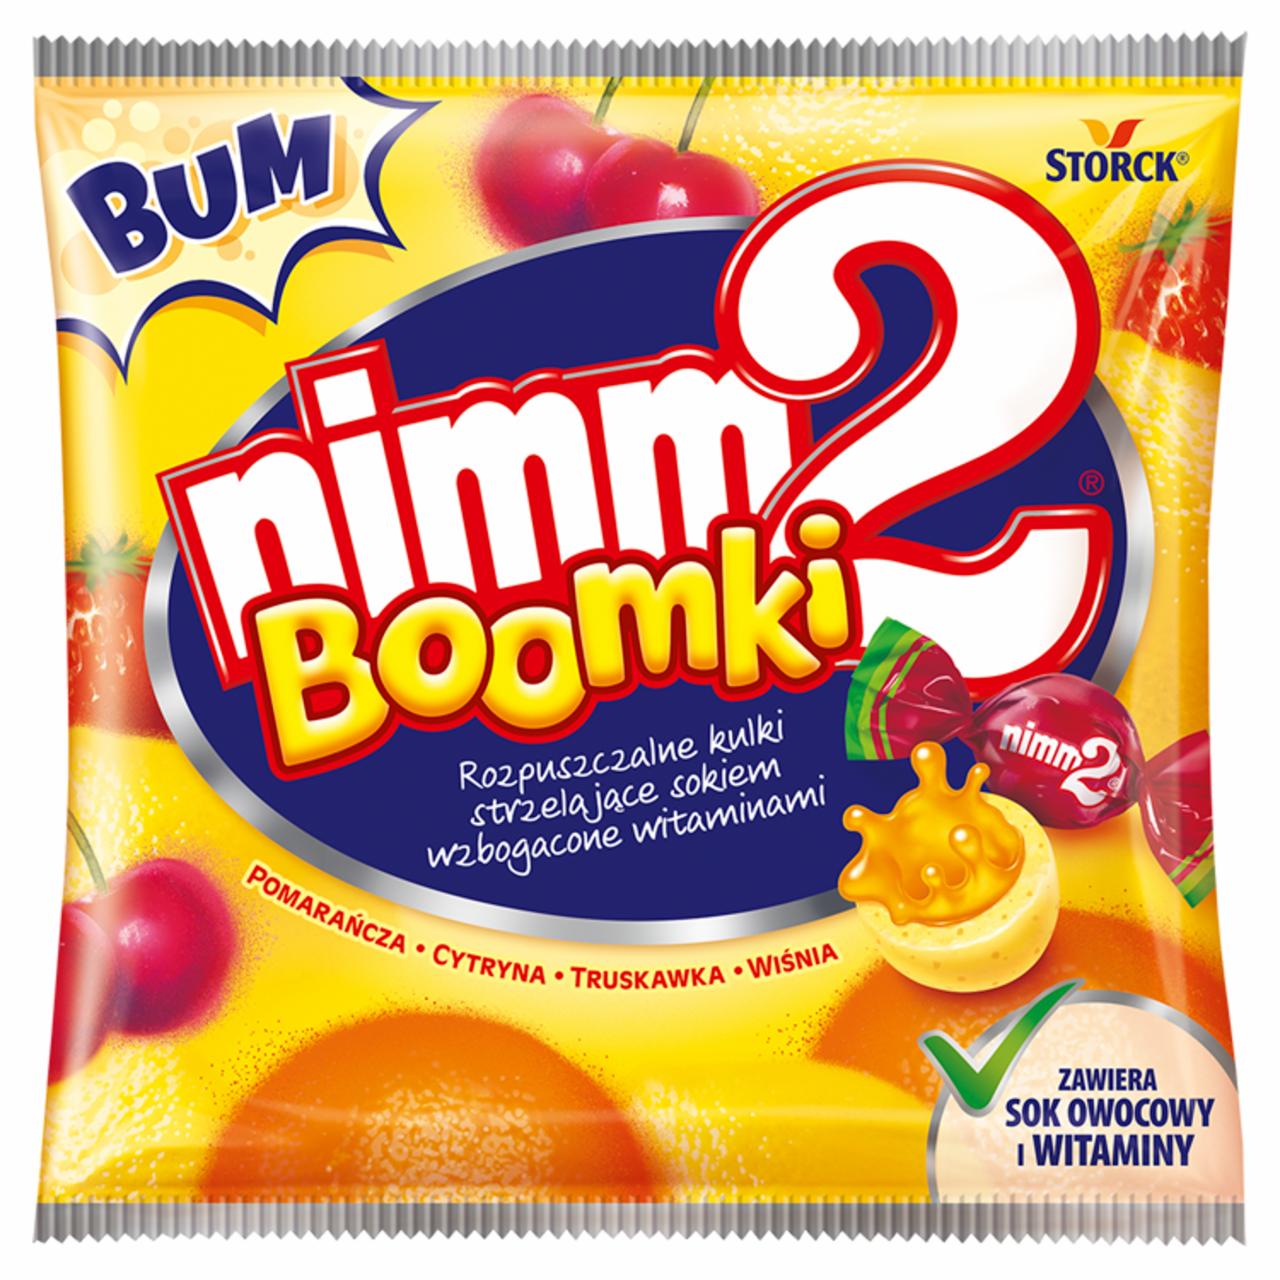 Zdjęcia - nimm2 Boomki Rozpuszczalne cukierki owocowe wzbogacone witaminami 90 g